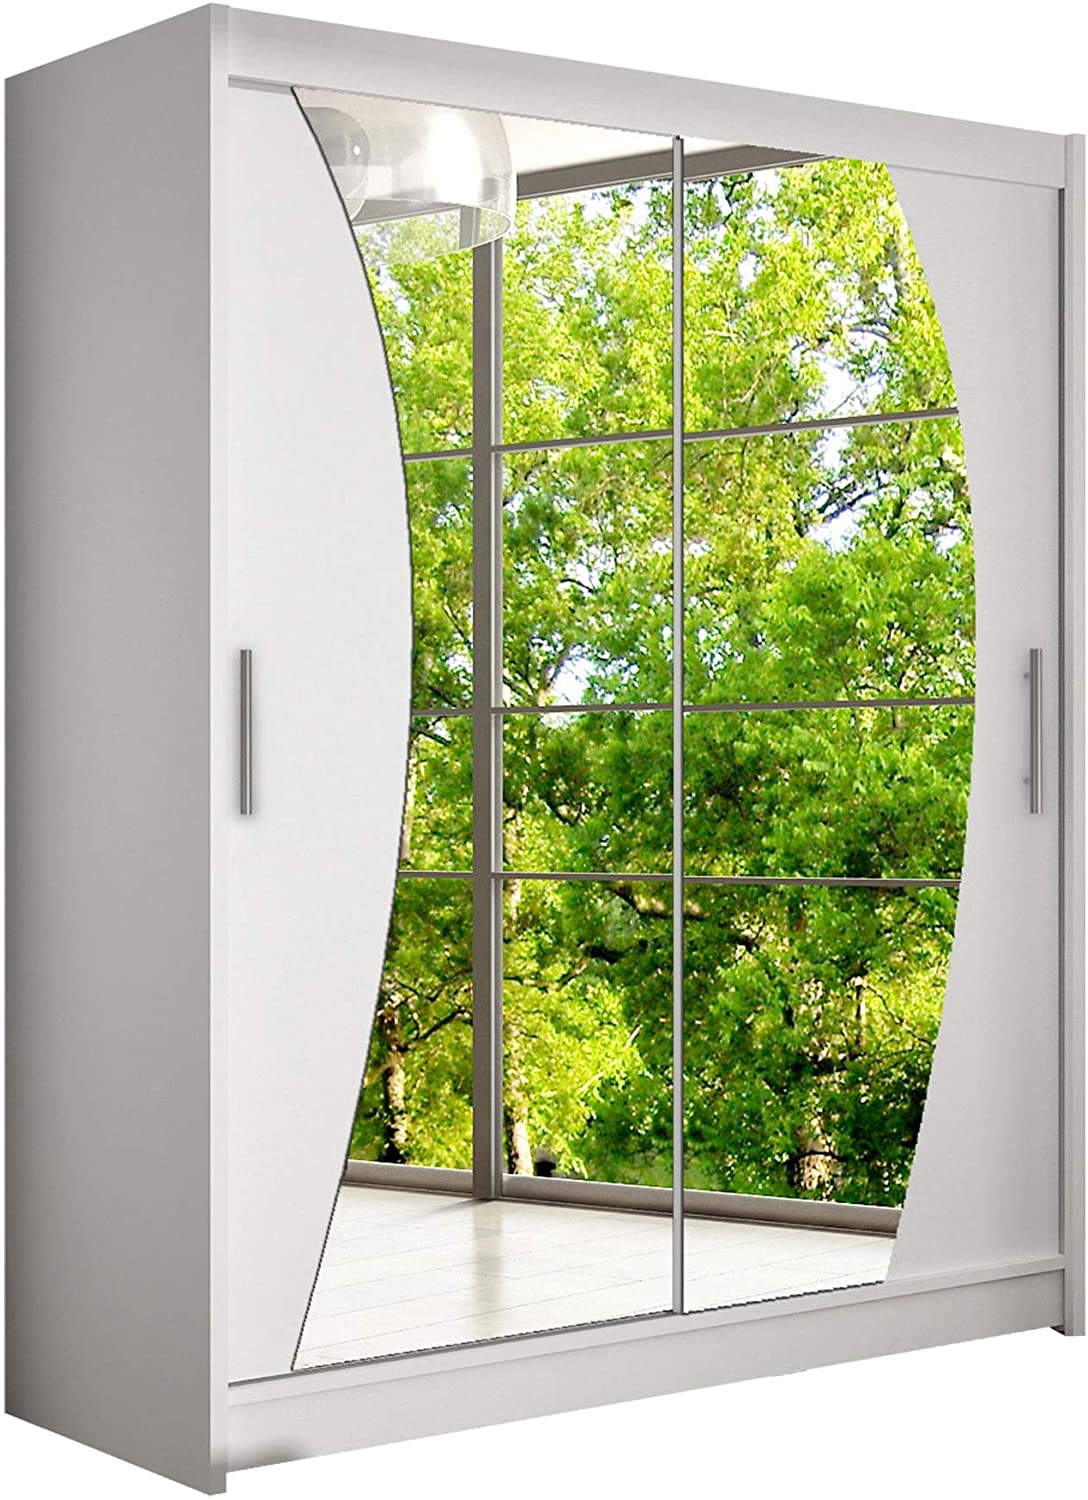 Moderner Spiegel Schwebetürenschrank, Kleiderschrank mit Spiegel, Schlafzimmerschrank, Schiebetürenschrank, Garderobe, Schlafzimmer (Weiß)